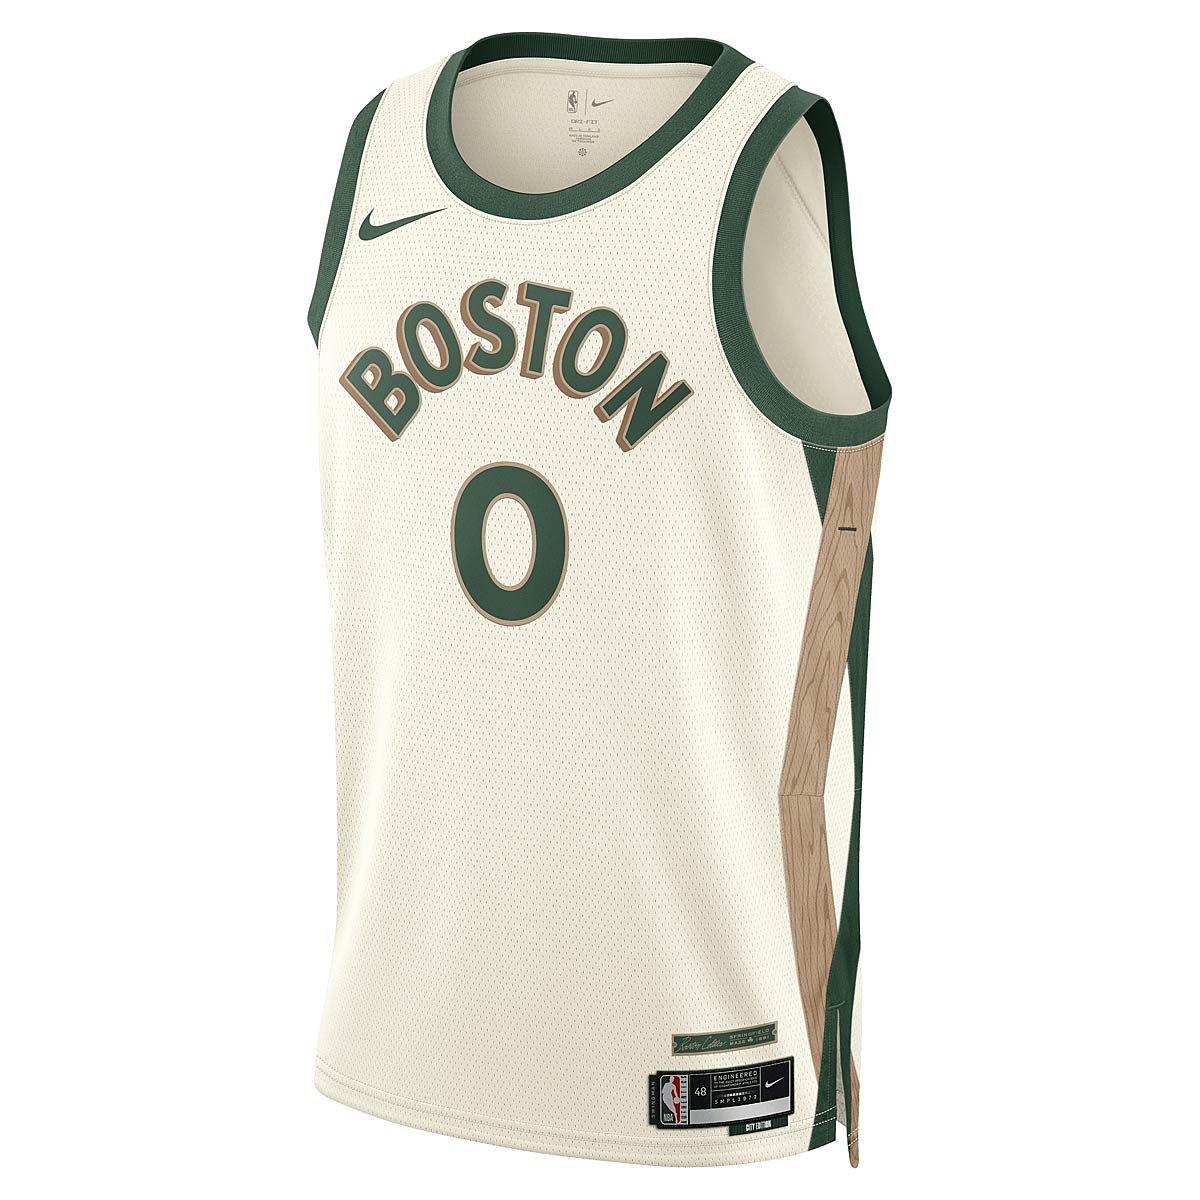 Nike NBA Boston Celtics Dri-fit City Edition Swingman Jersey Jayson Tatum, Sail/stealth-weiß S